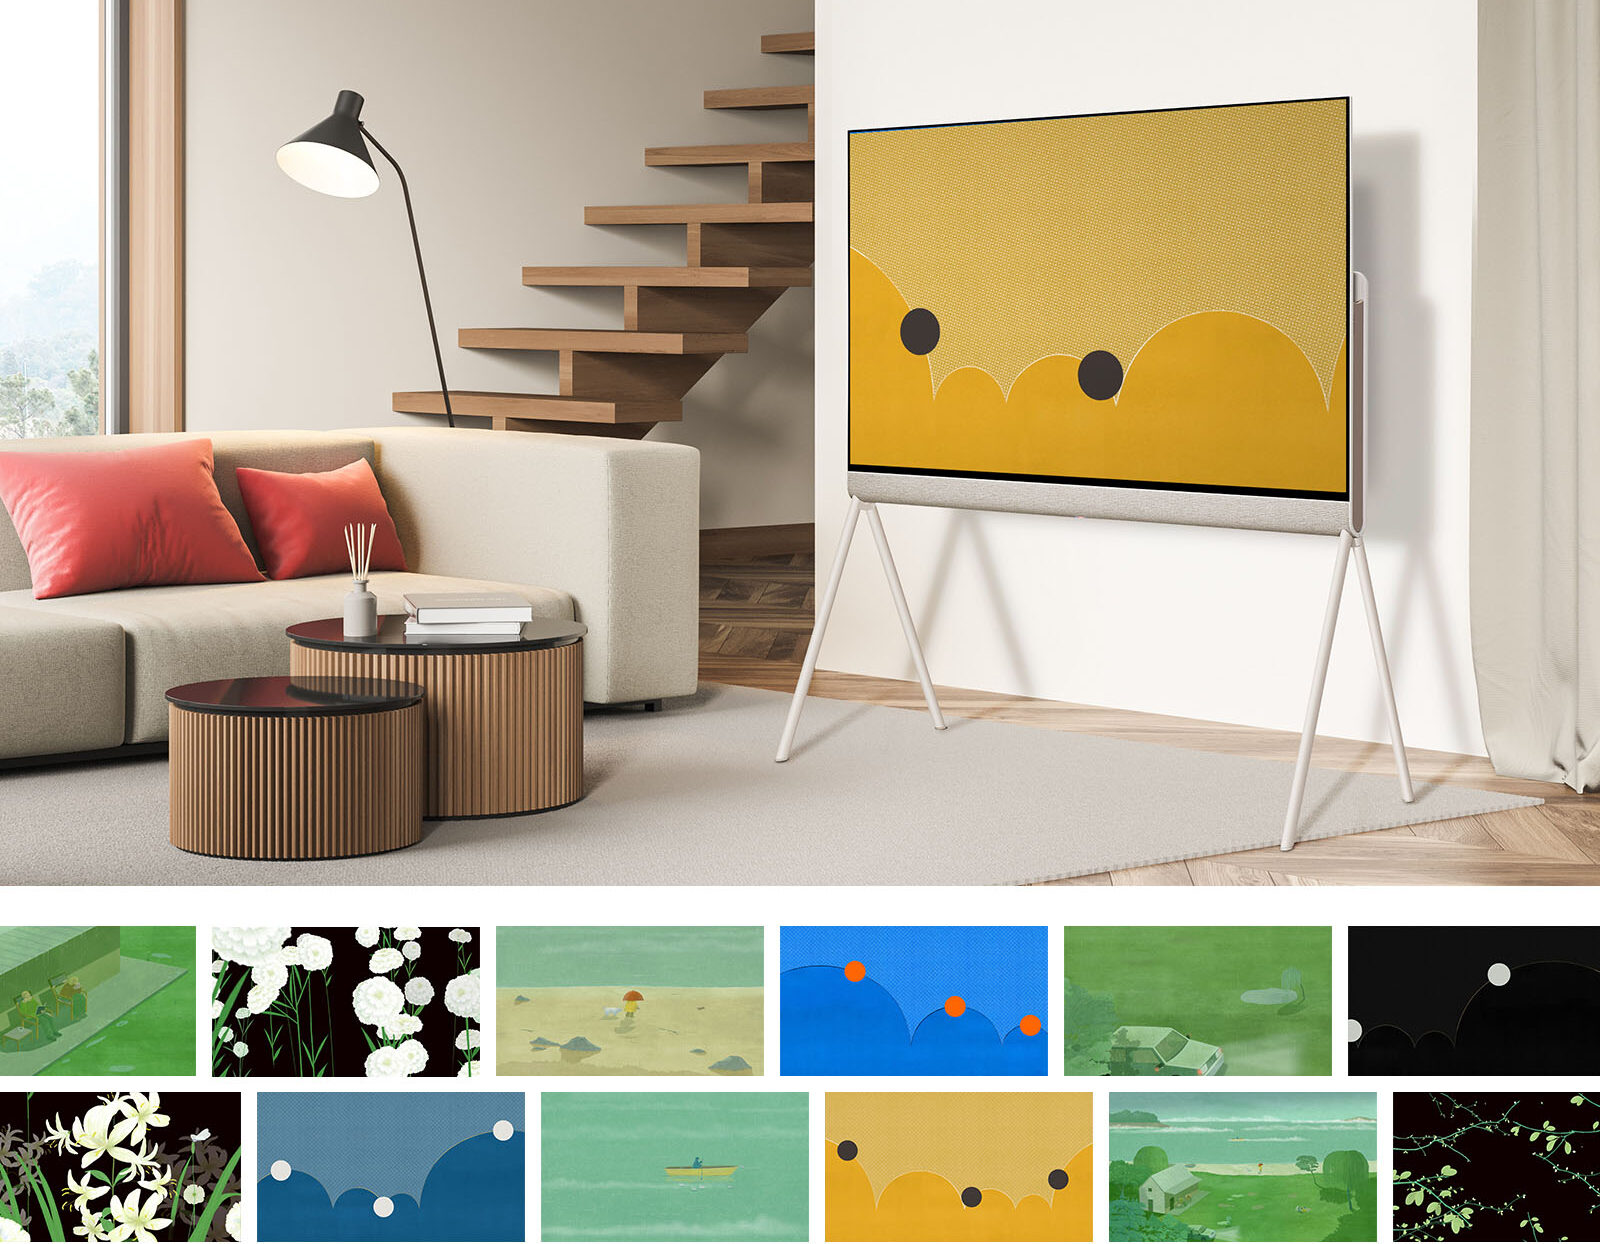 Hơn cả 1 chiếc TV, LG Pose chính là một tác phẩm nghệ thuật, nâng tầm phong cách sống của bạn